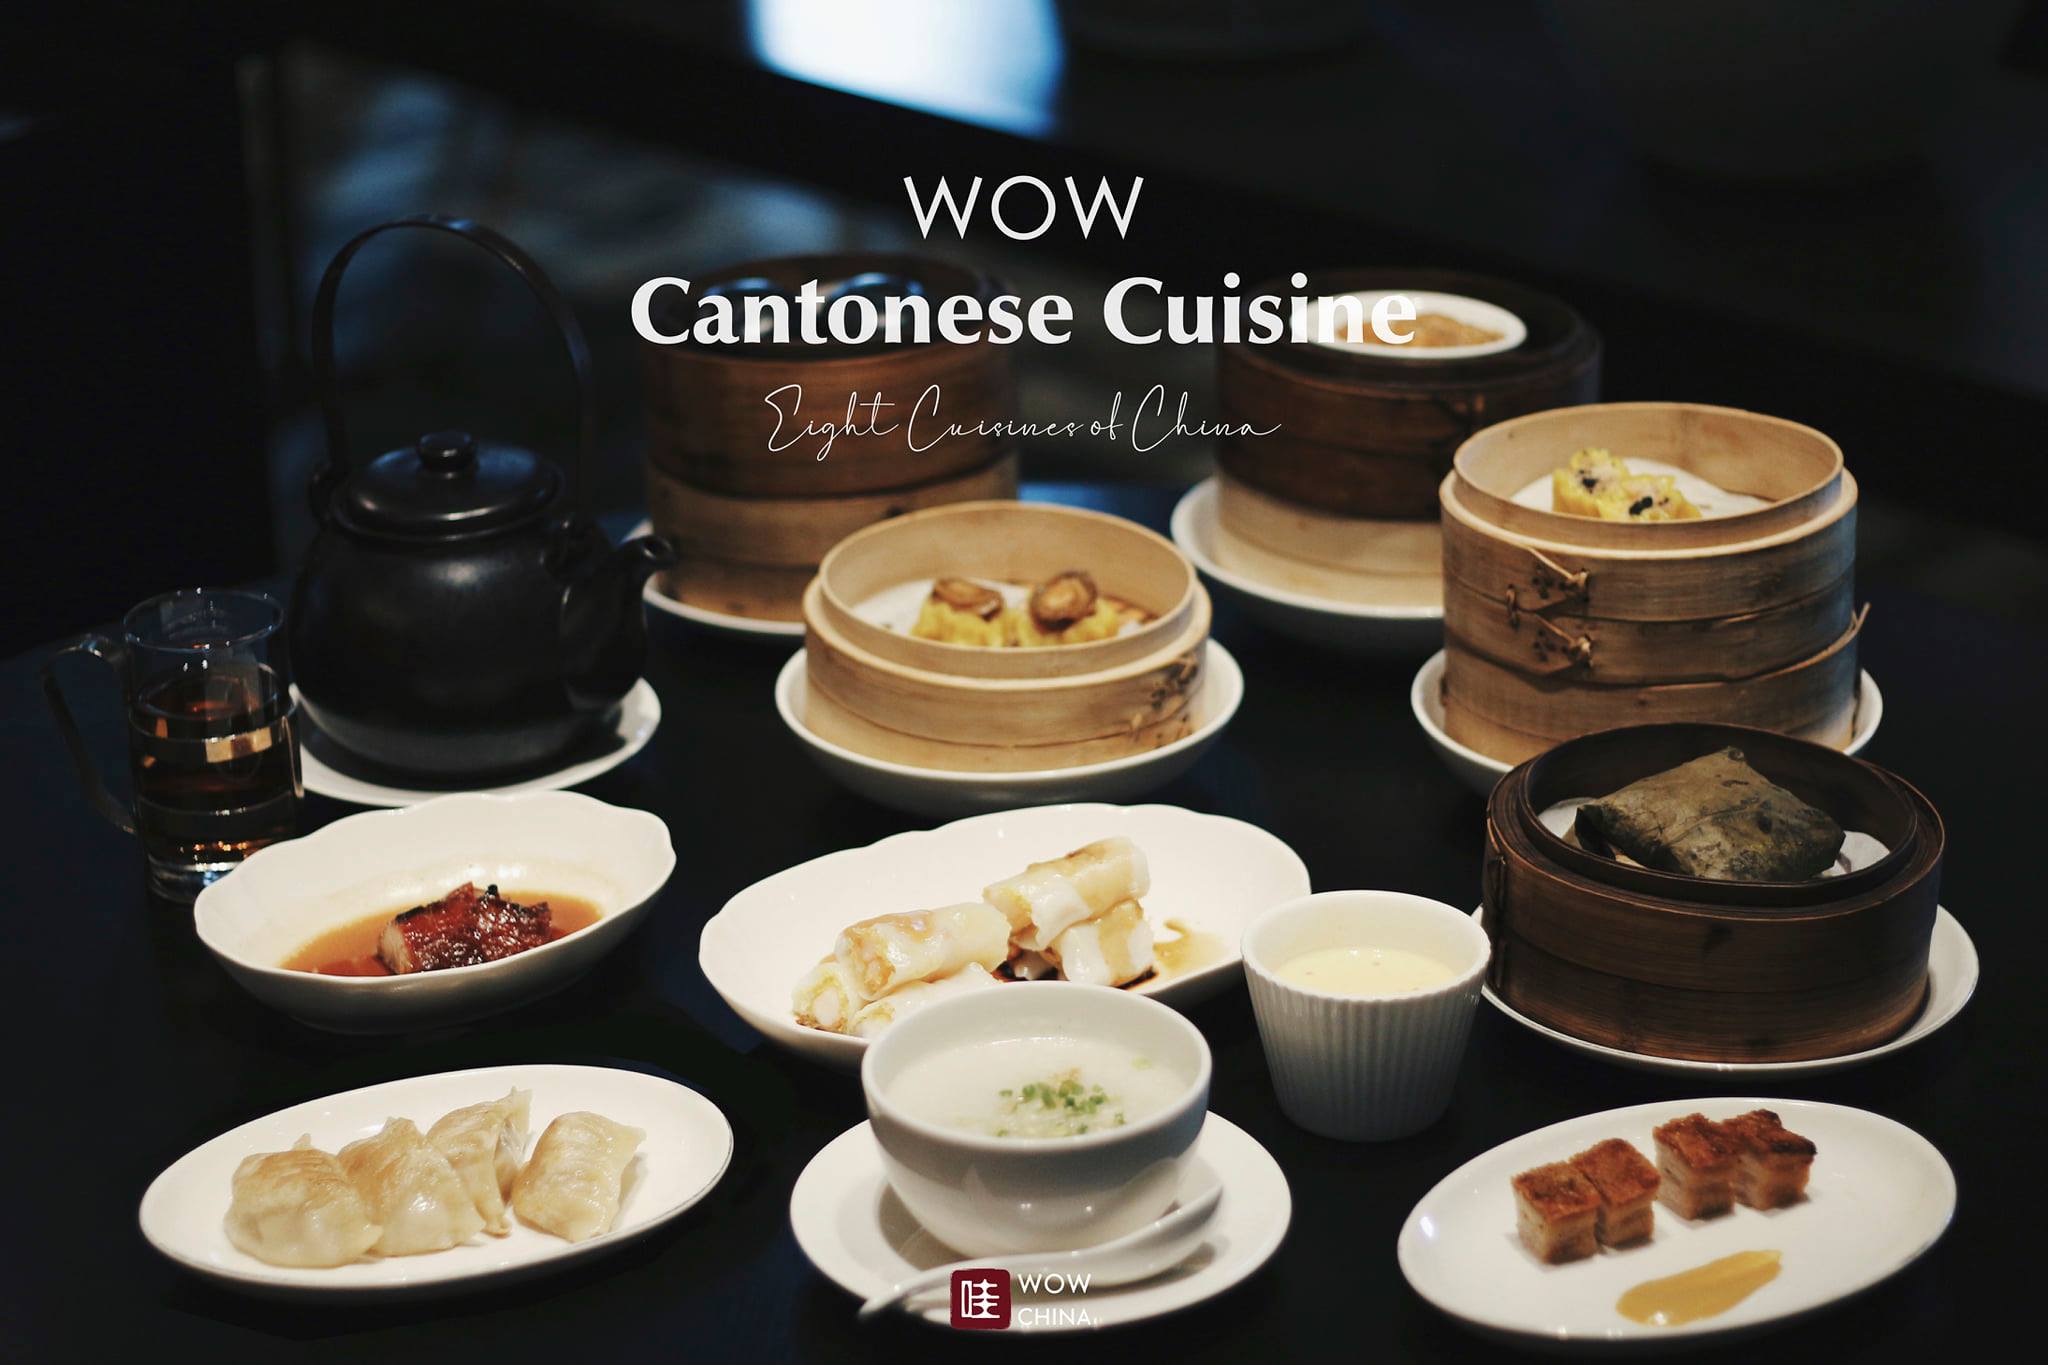 สัมผัสมนต์เสน่ห์แห่งวัฒนธรรมอาหารจีน
รู้จักกับอาหารจีน 8 ตระกูลใหญ่สุด #WOW
.
โพ…